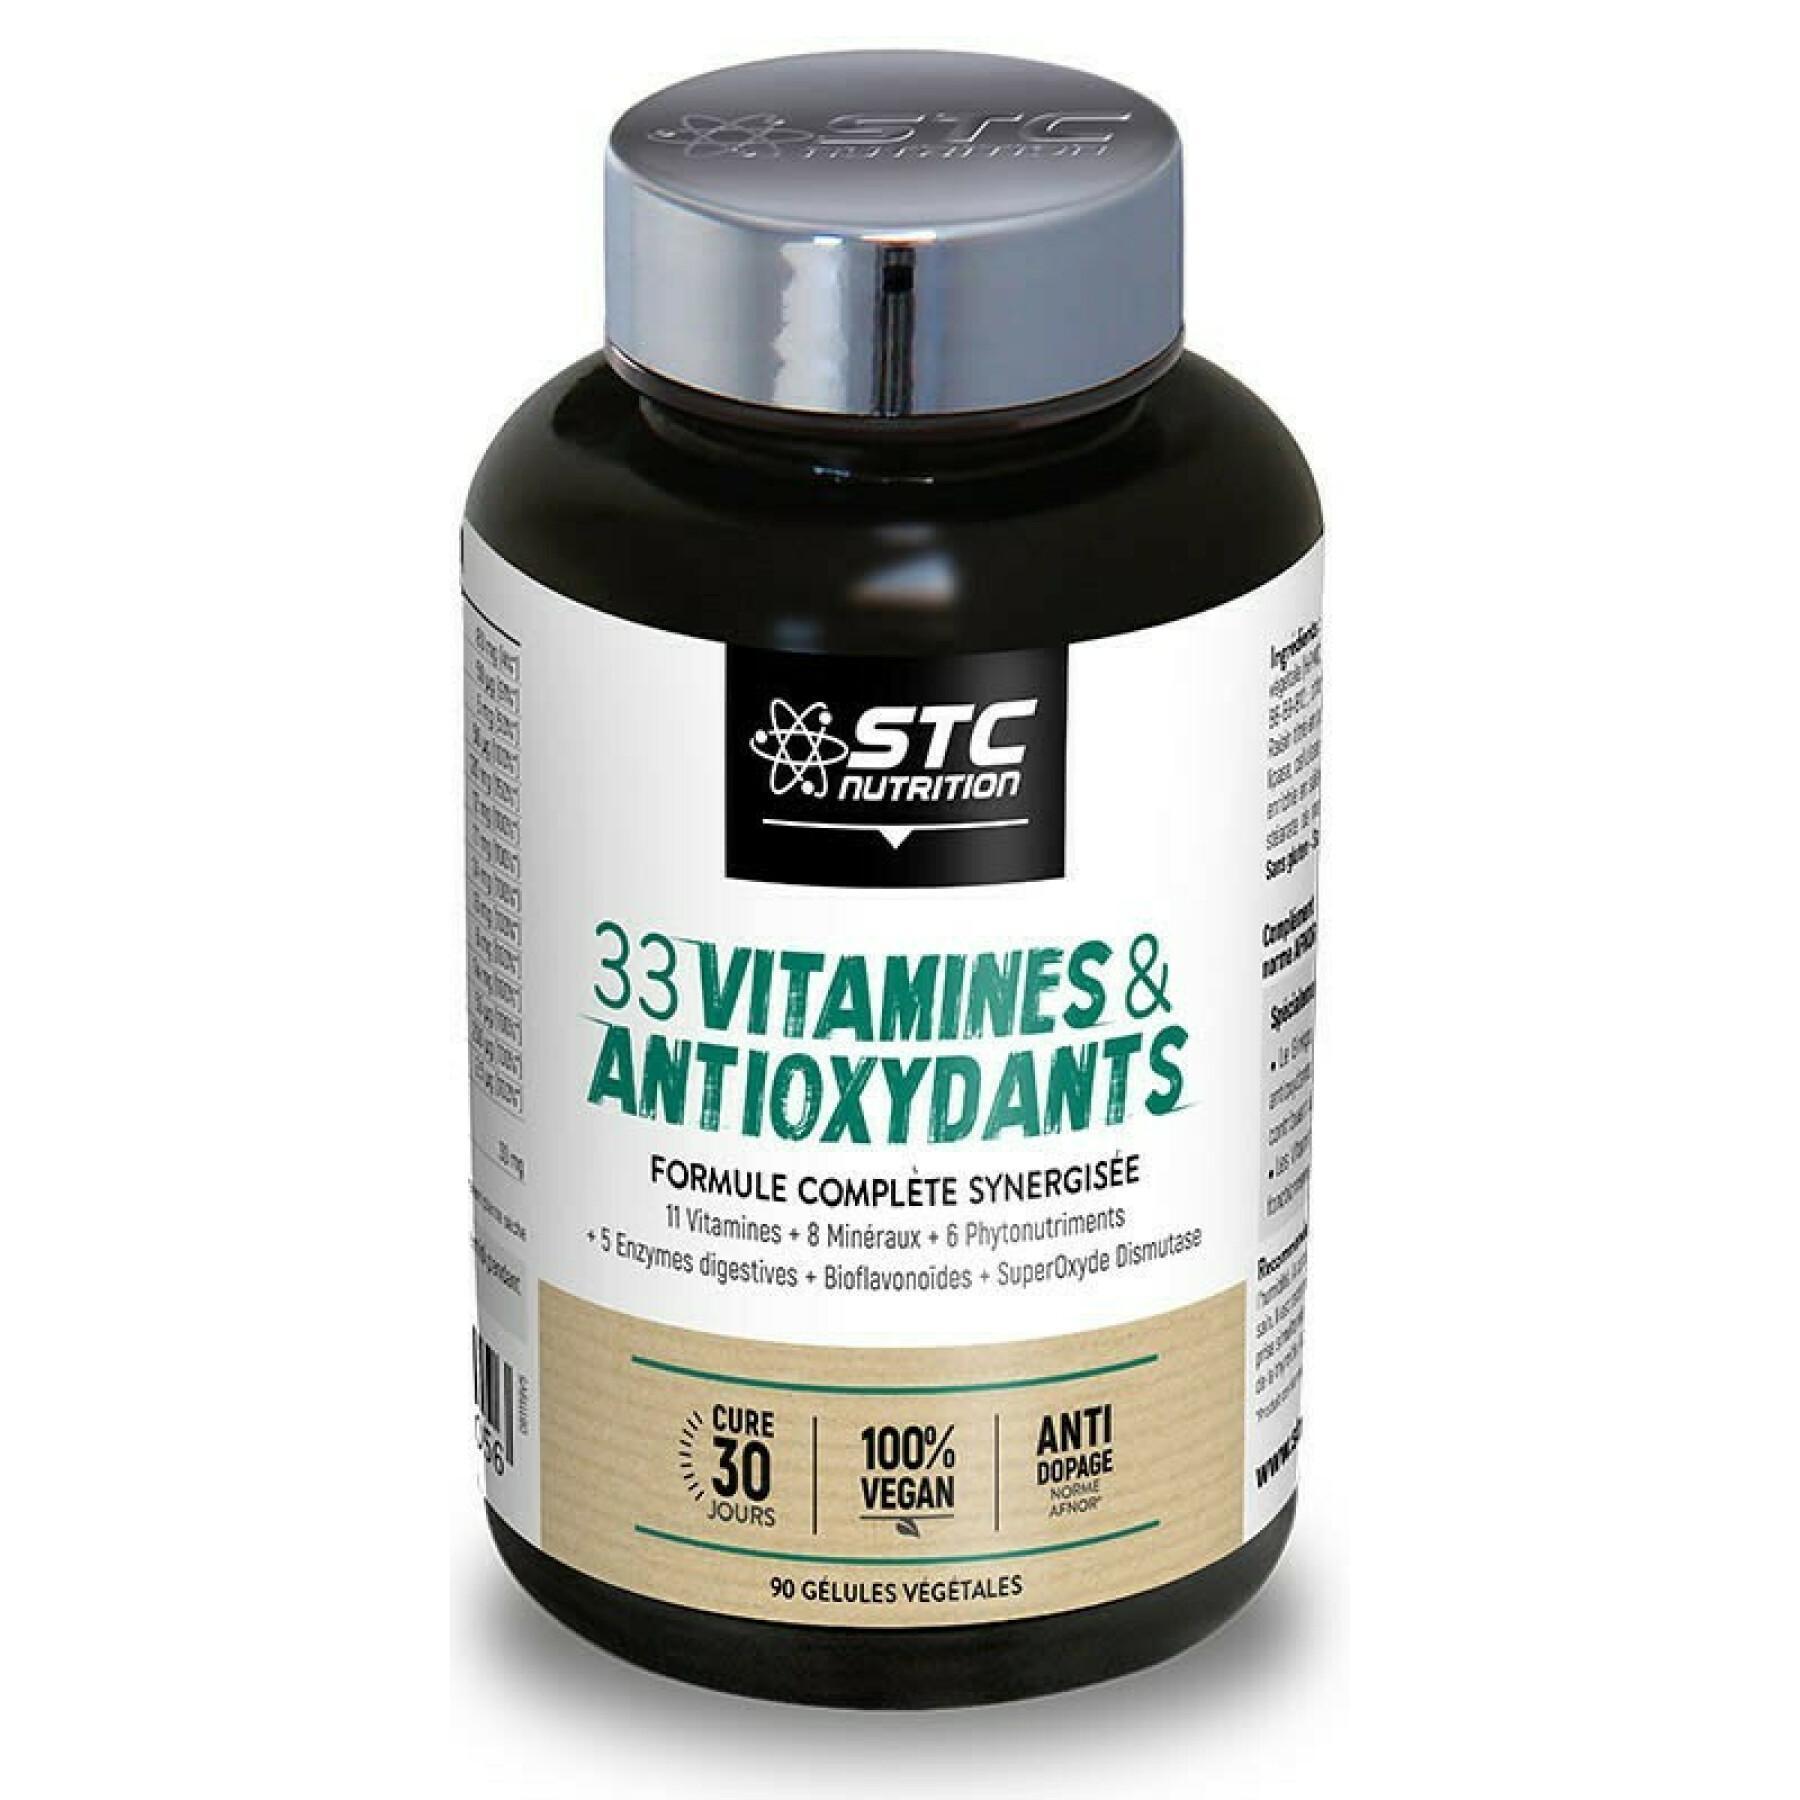 Formule complète synergigée 33 vitamins & antioxydants STC Nutrition - 90 gélules végétales